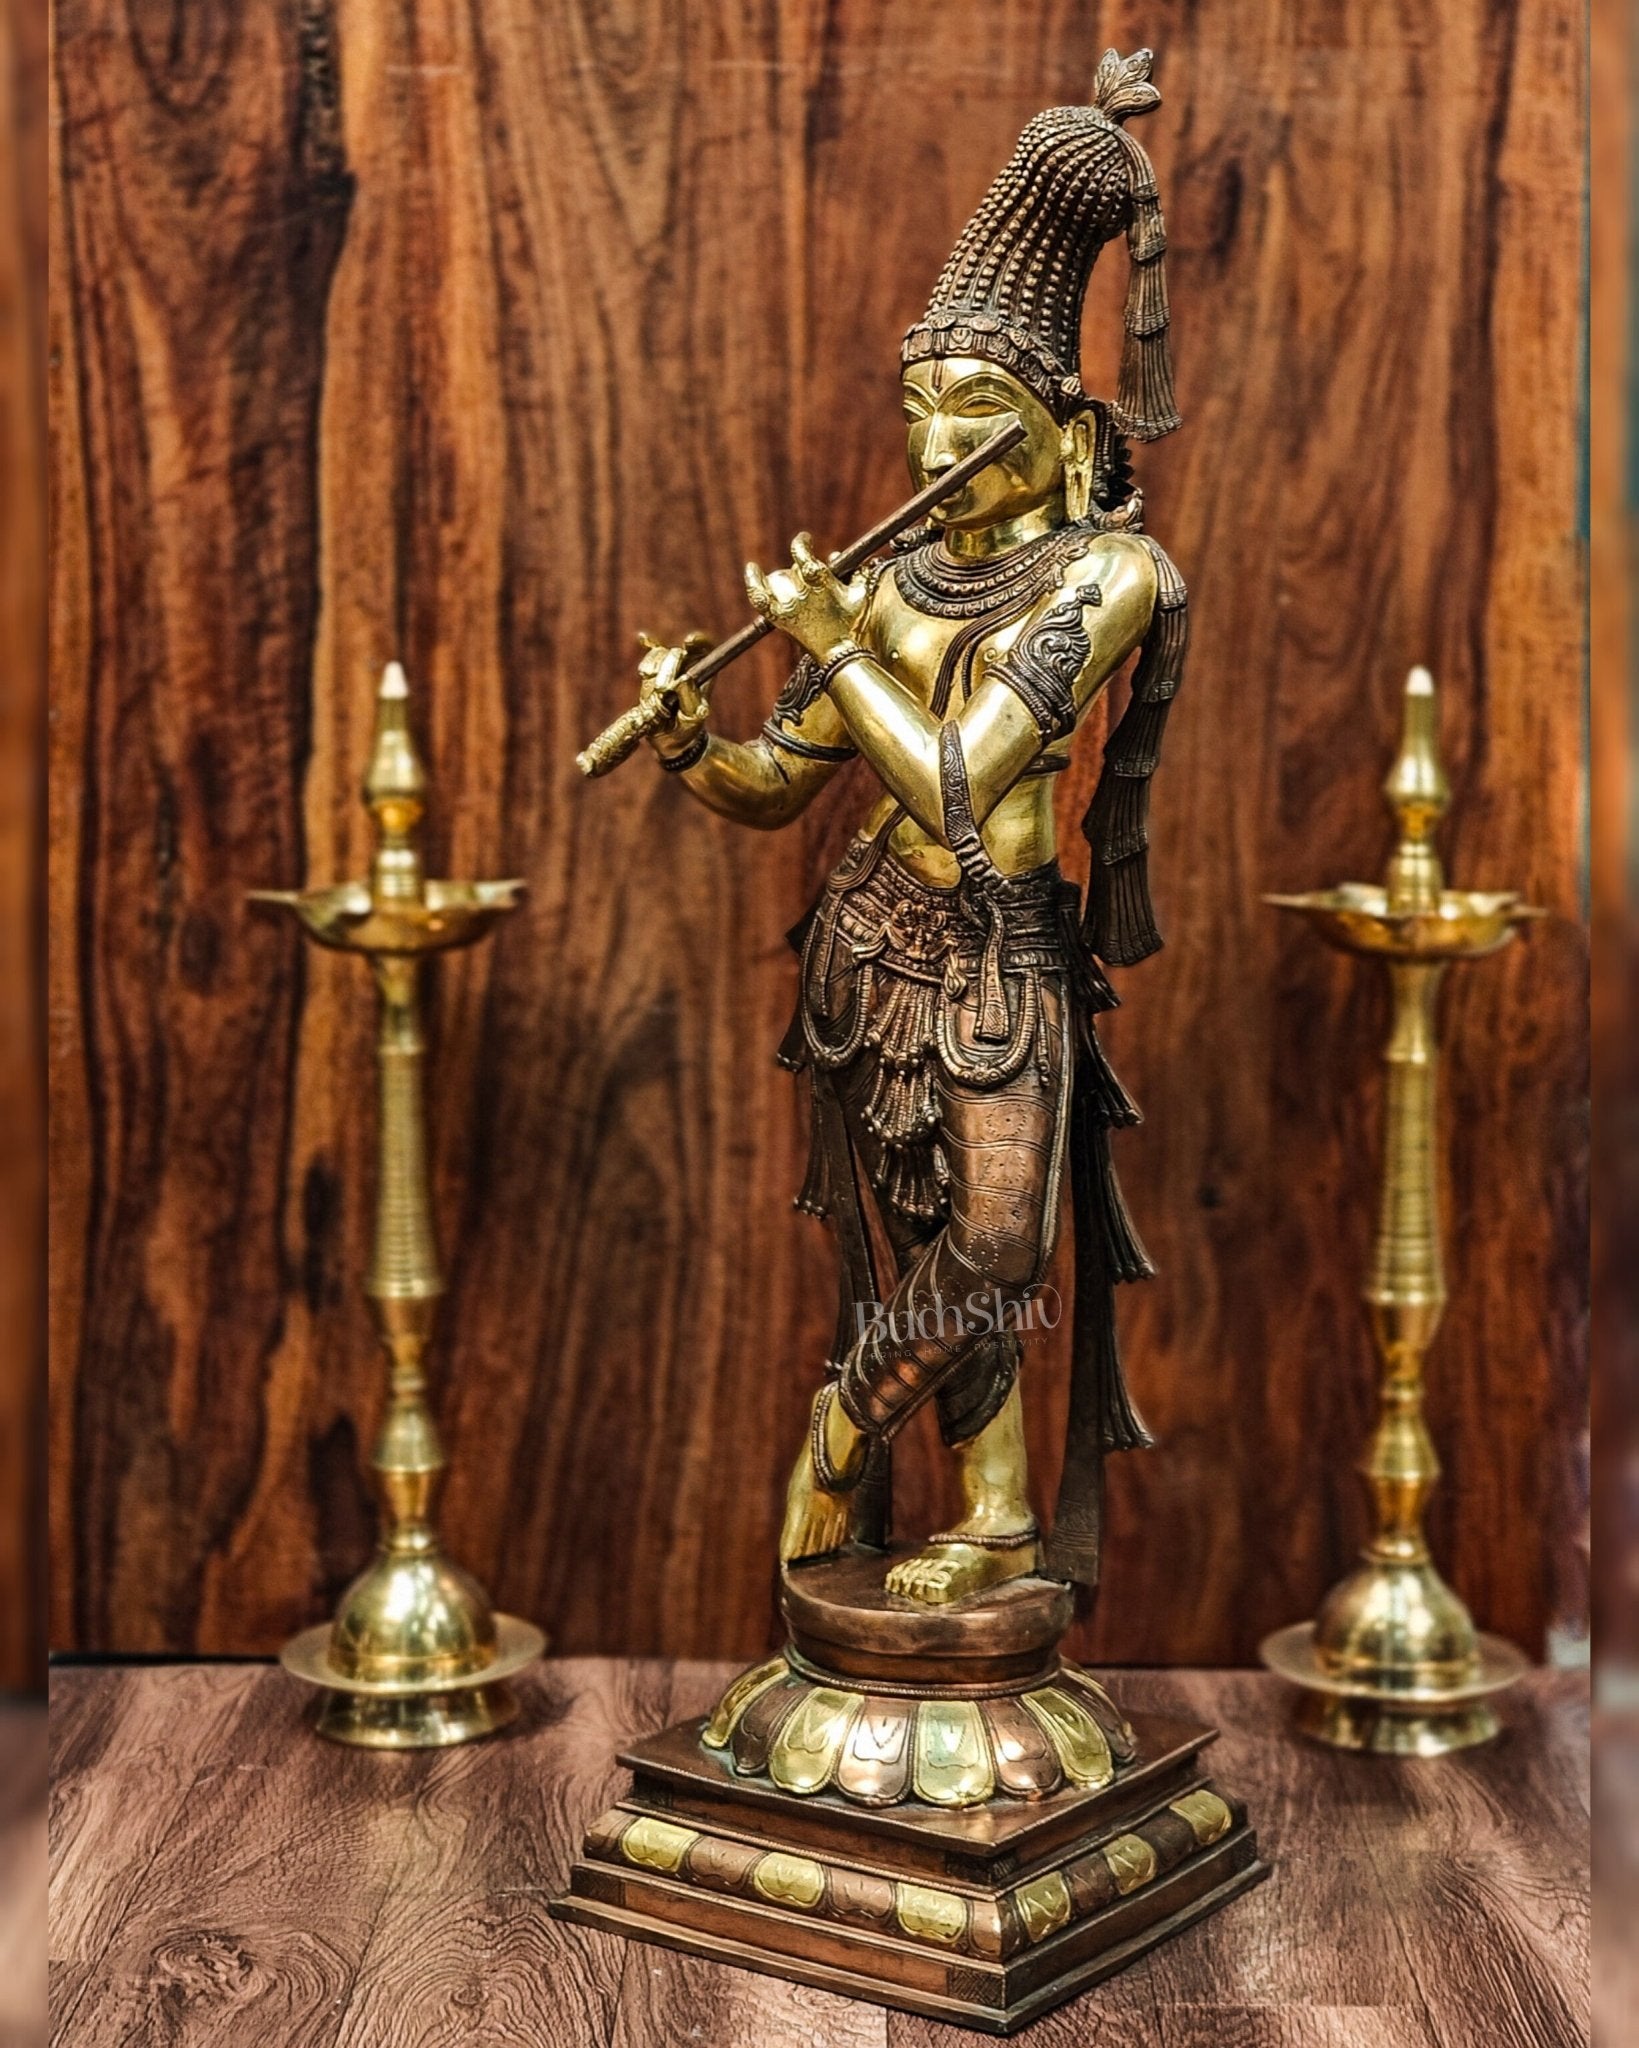 Divine Krishna Murlidhar Idol Superfine Brass | Unique Crown | 35.5 Inch/ 3 feet - Budhshiv.com